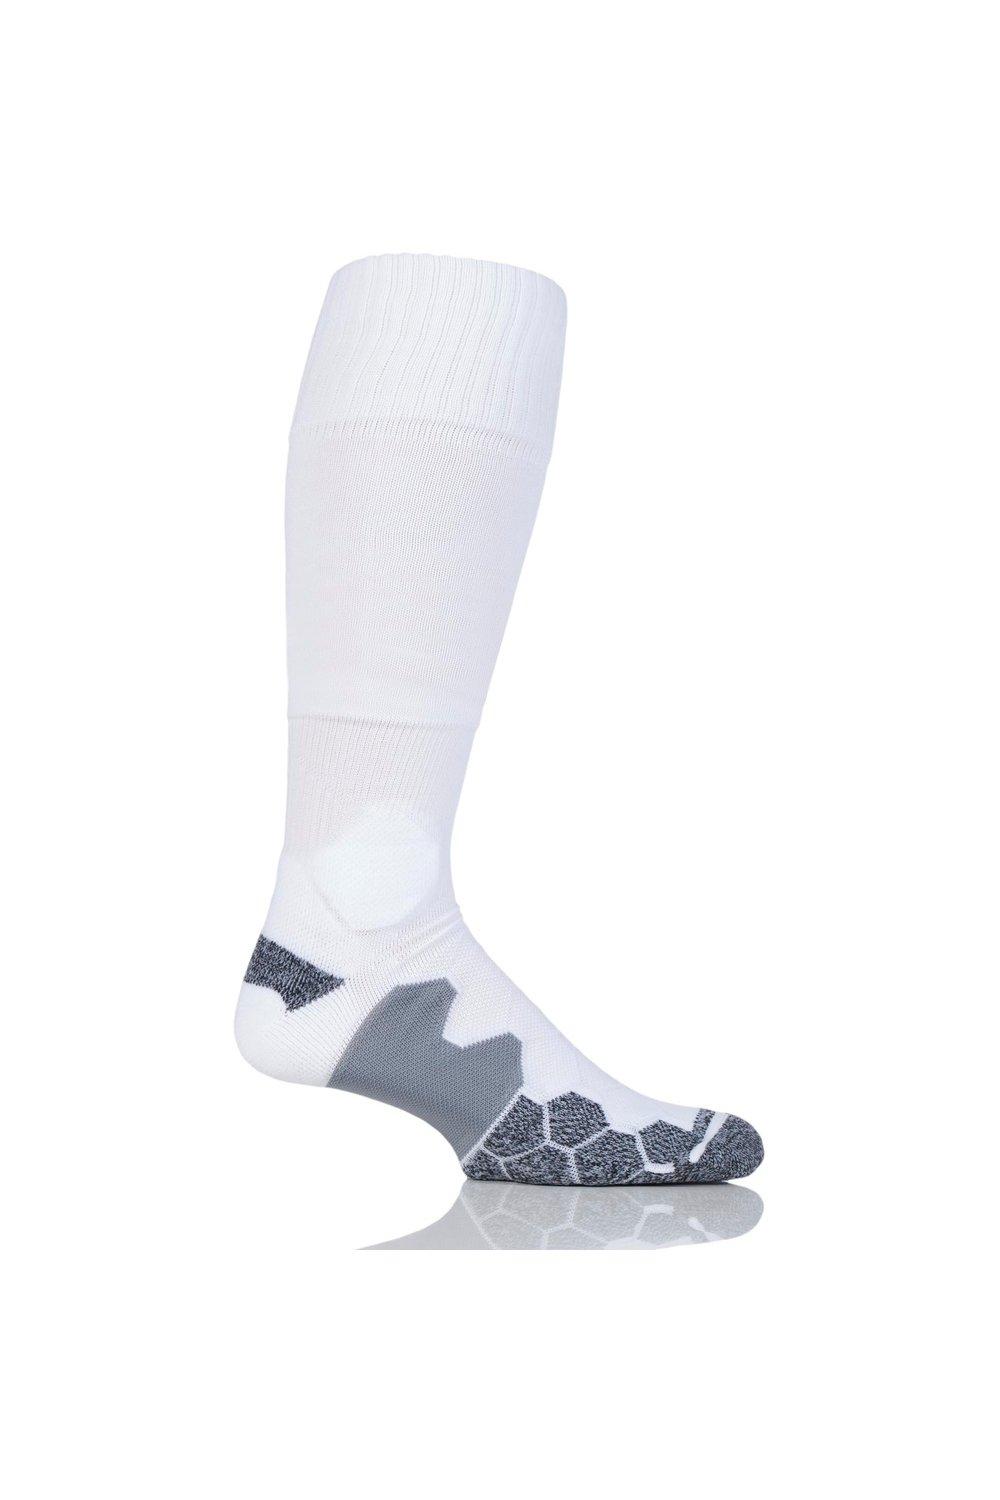 1 пара технических футбольных носков с мягкой подкладкой, произведенных в Великобритании SOCKSHOP of London, белый